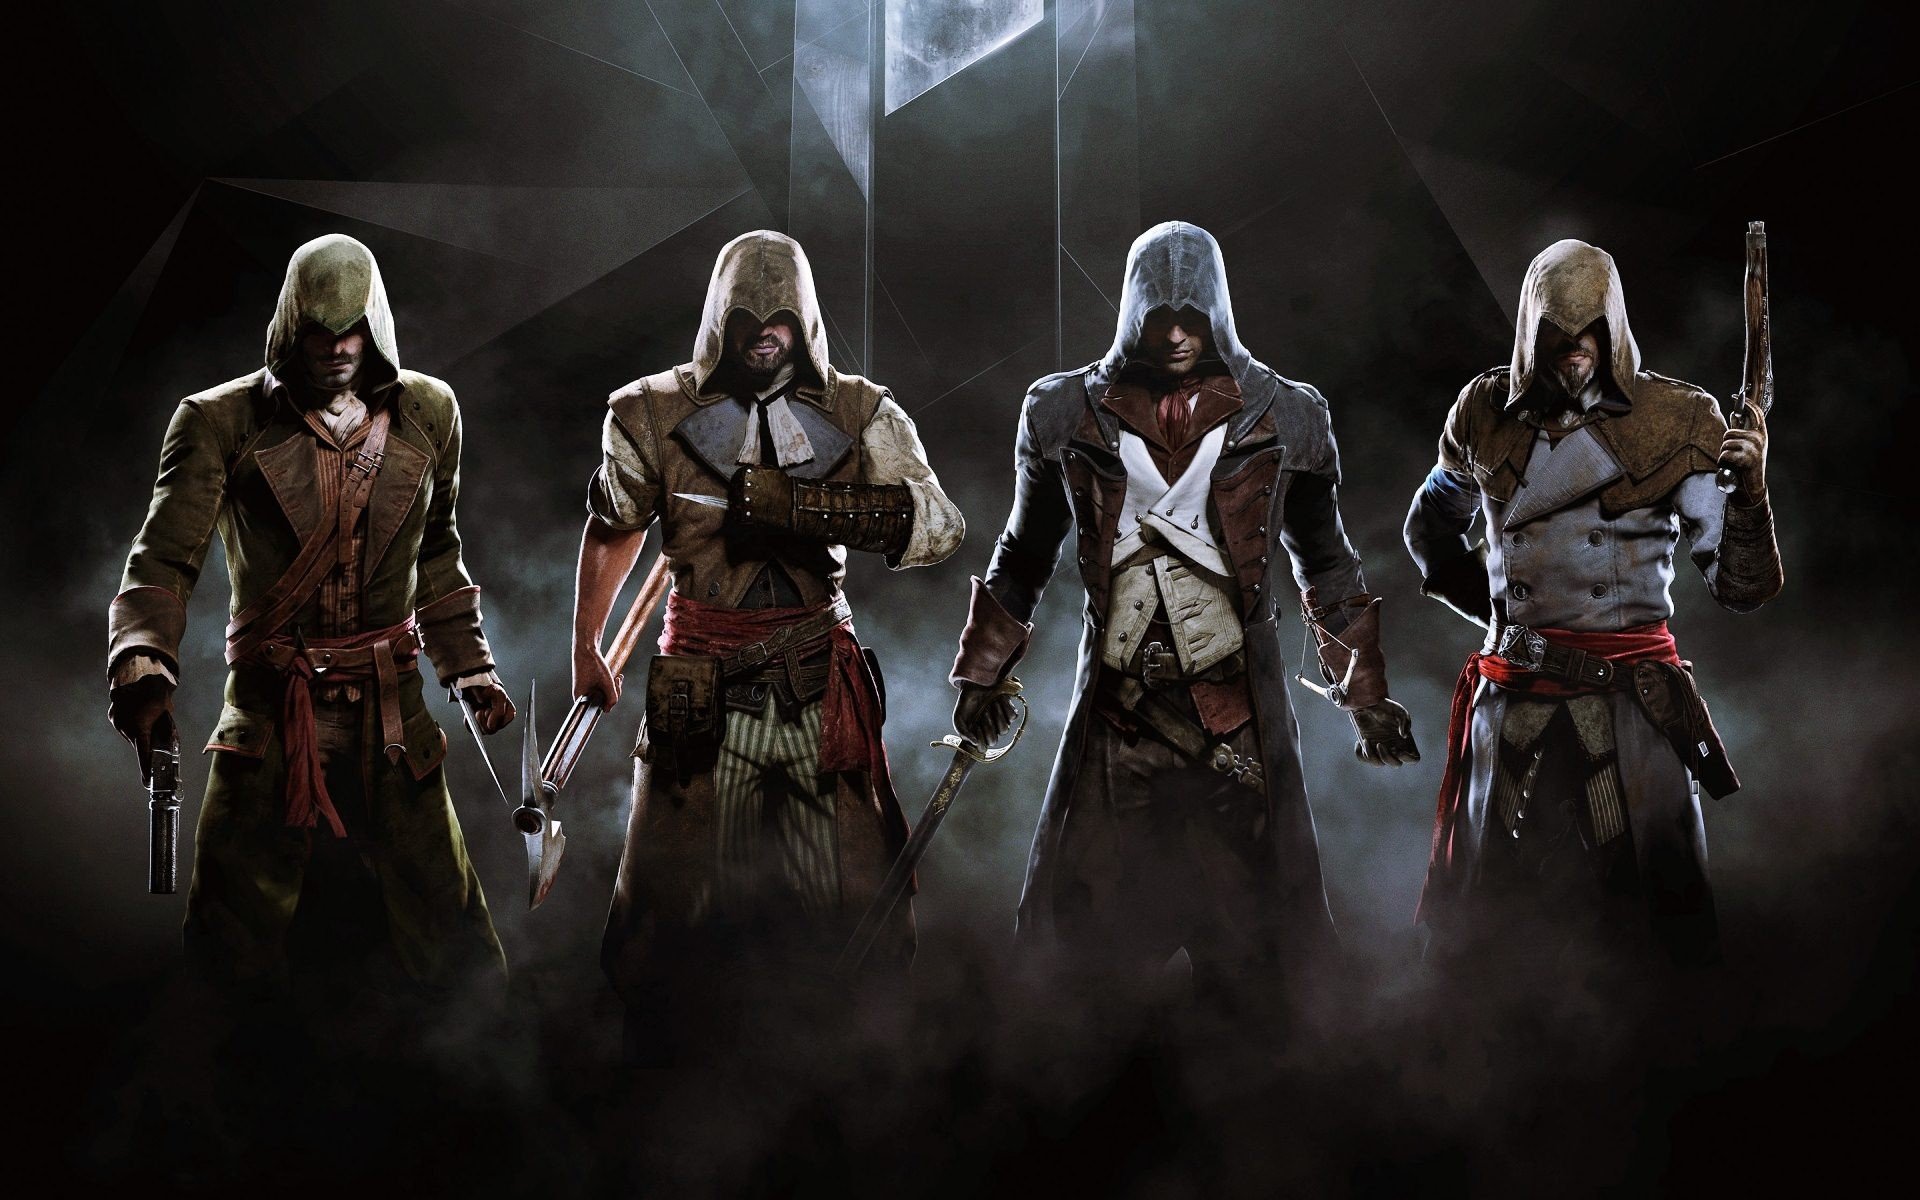 Assassins Creed: Với Assassins Creed, bạn sẽ được hóa thân vào một sát thủ chuyên nghiệp, đi khắp các thành phố của châu Âu thời Trung cổ. Với đồ họa tuyệt đẹp và câu chuyện hấp dẫn, đây chắc chắn là một trong những game không thể bỏ qua. Xem ngay hình ảnh liên quan đến Assassins Creed!